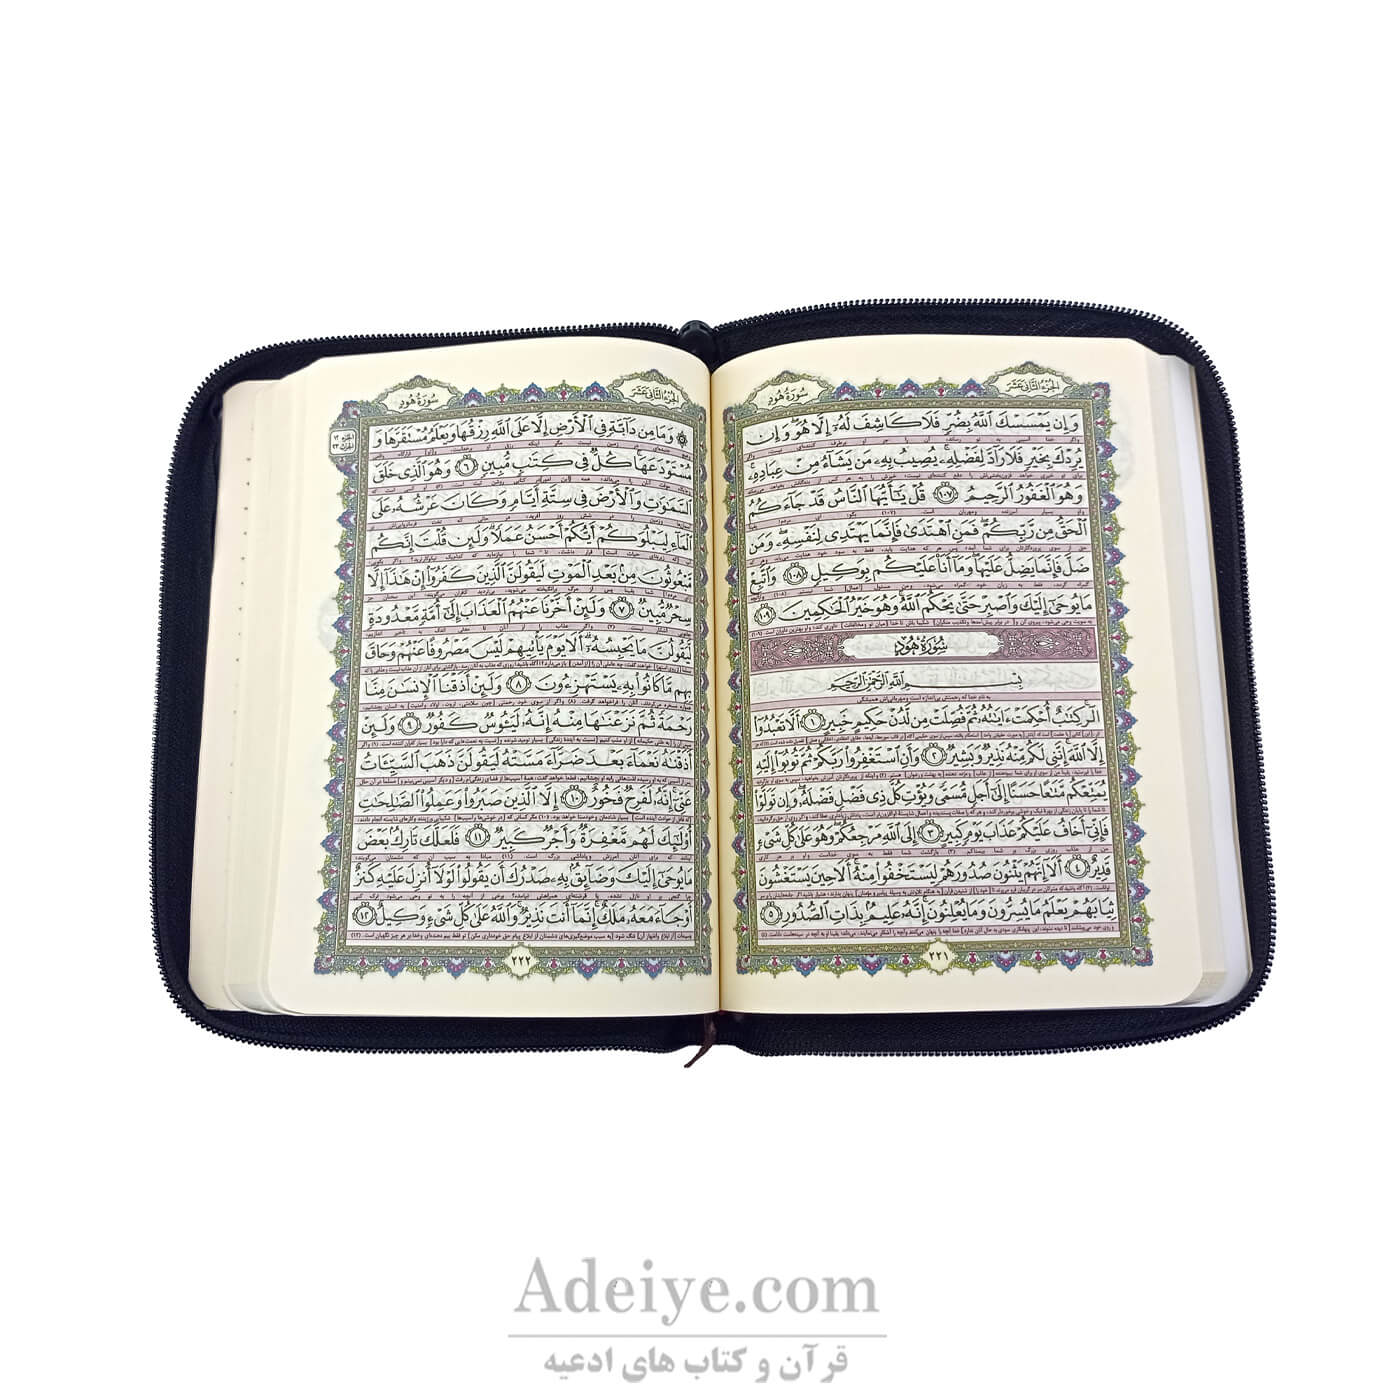 قرآن جیبی زیپدار با خط عثمان طه همراه با کیف-عکس متن2